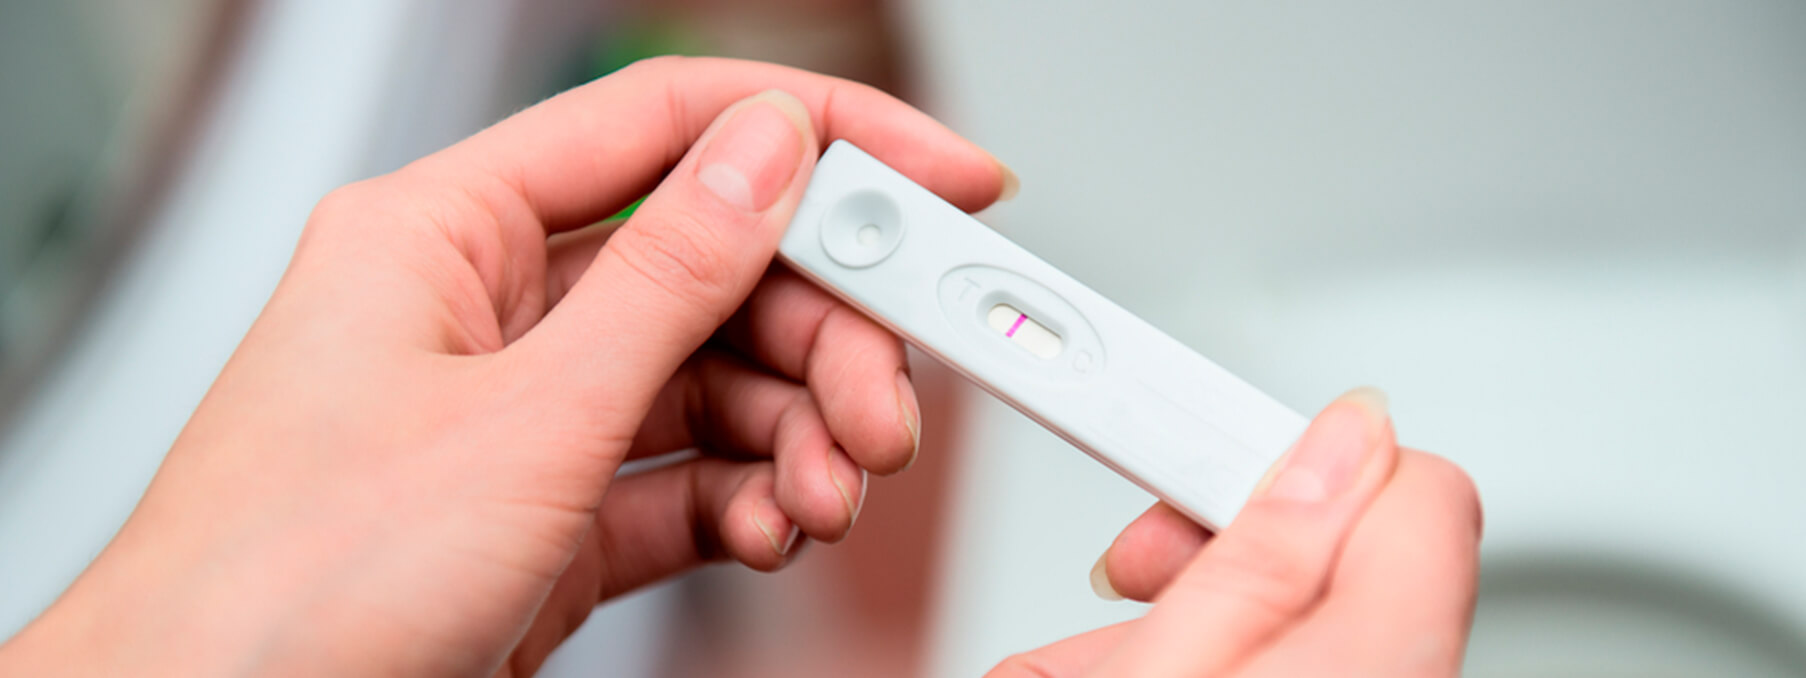 test de embarazo caducado